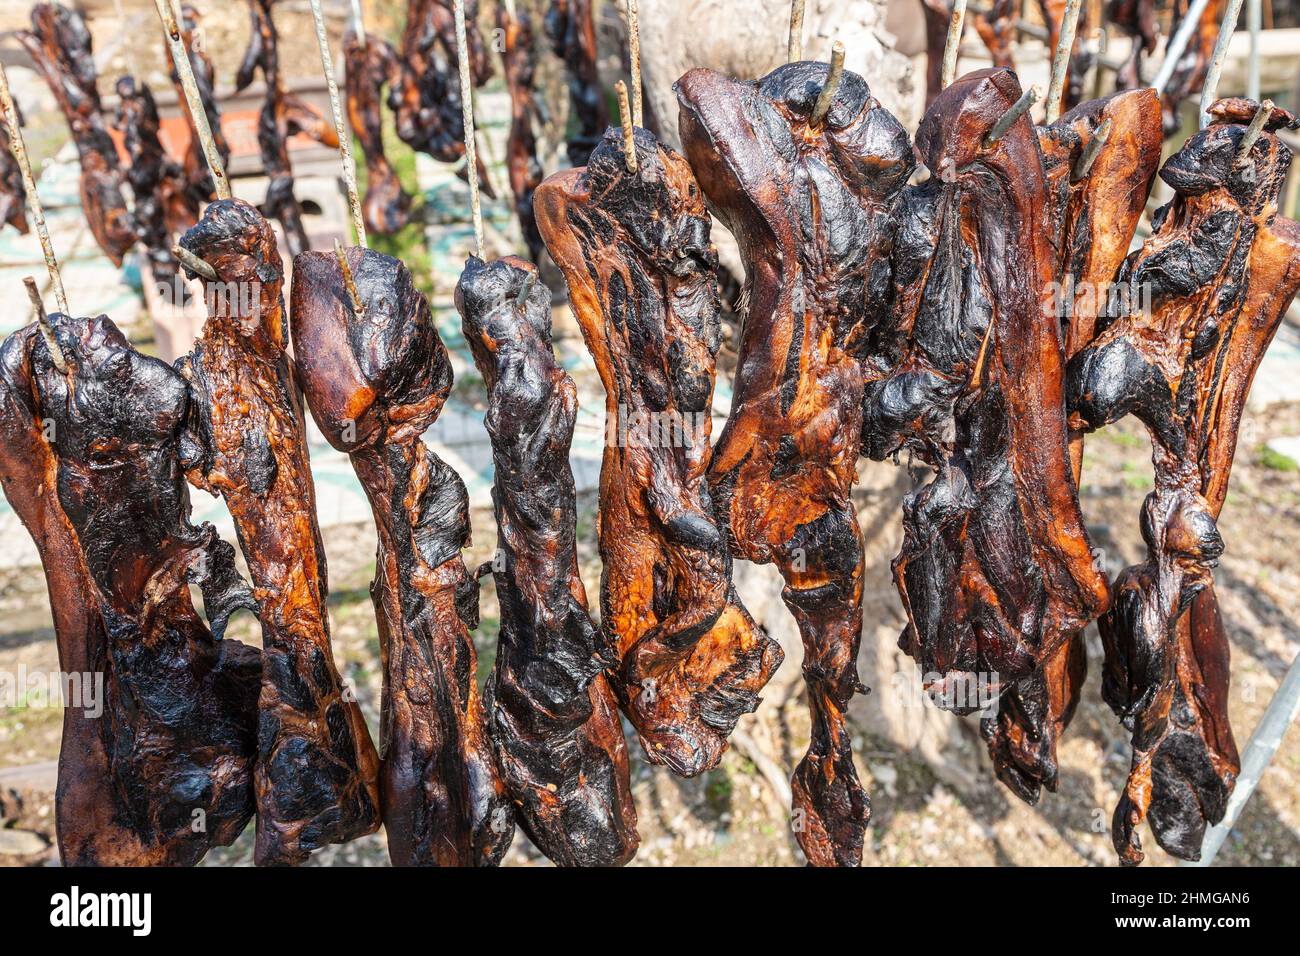 Los cuartos de cerdo se secaron al sol en el patio de un restaurante en Hangzhou, China Foto de stock